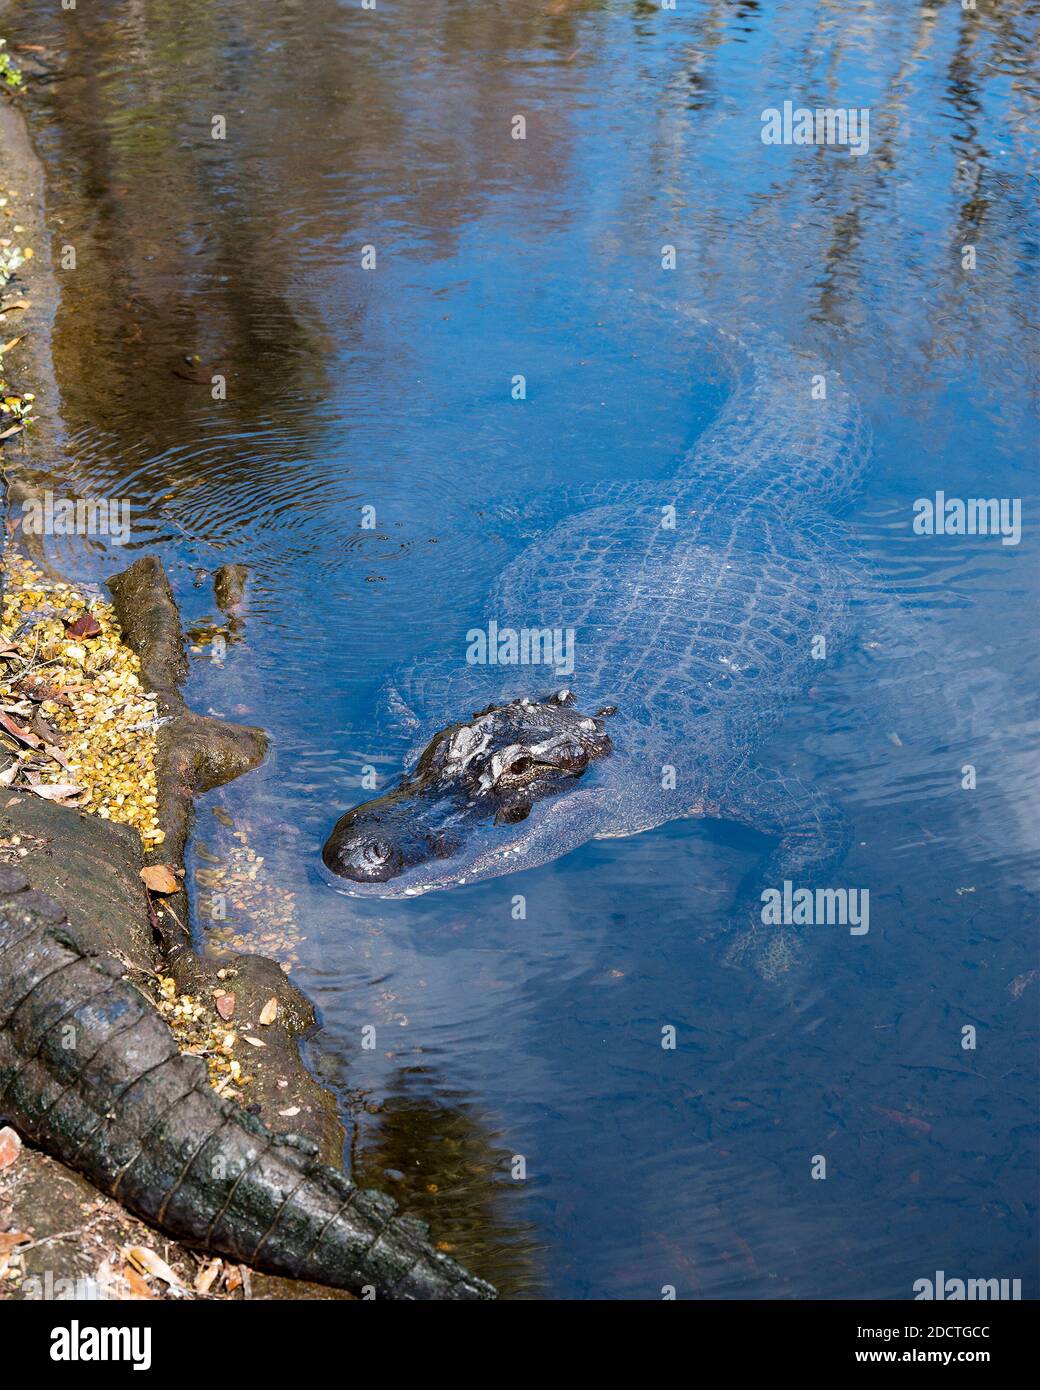 Vista de perfil de cocodrilo de cerca, descansando en el agua mostrando su cuerpo, cabeza, dientes, piernas, uñas, en su hábitat y entorno. Foto de cocodrilo. Foto de stock